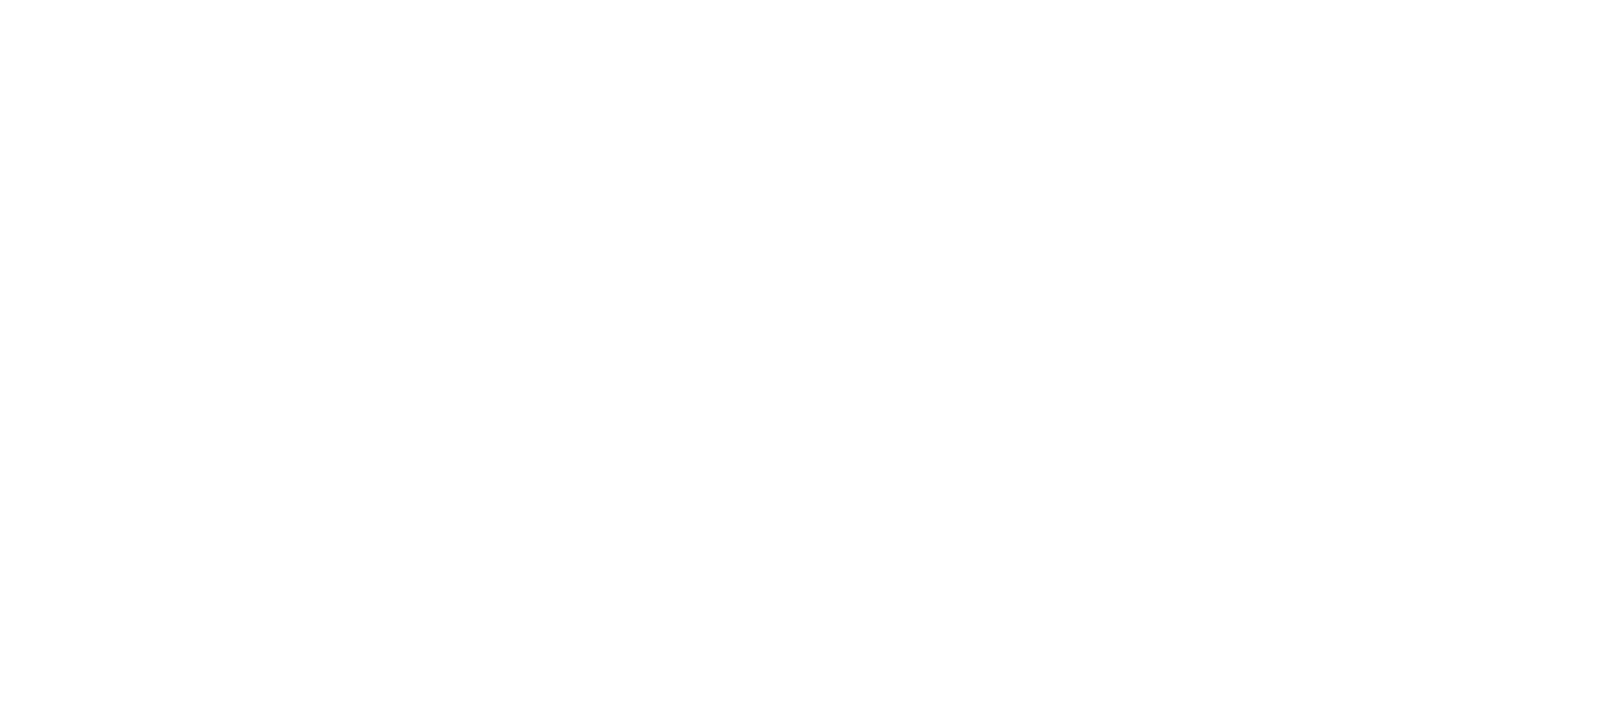 簡報icon的SVG檔與PNG檔是甚麼，製作ppt時我又該選哪種？